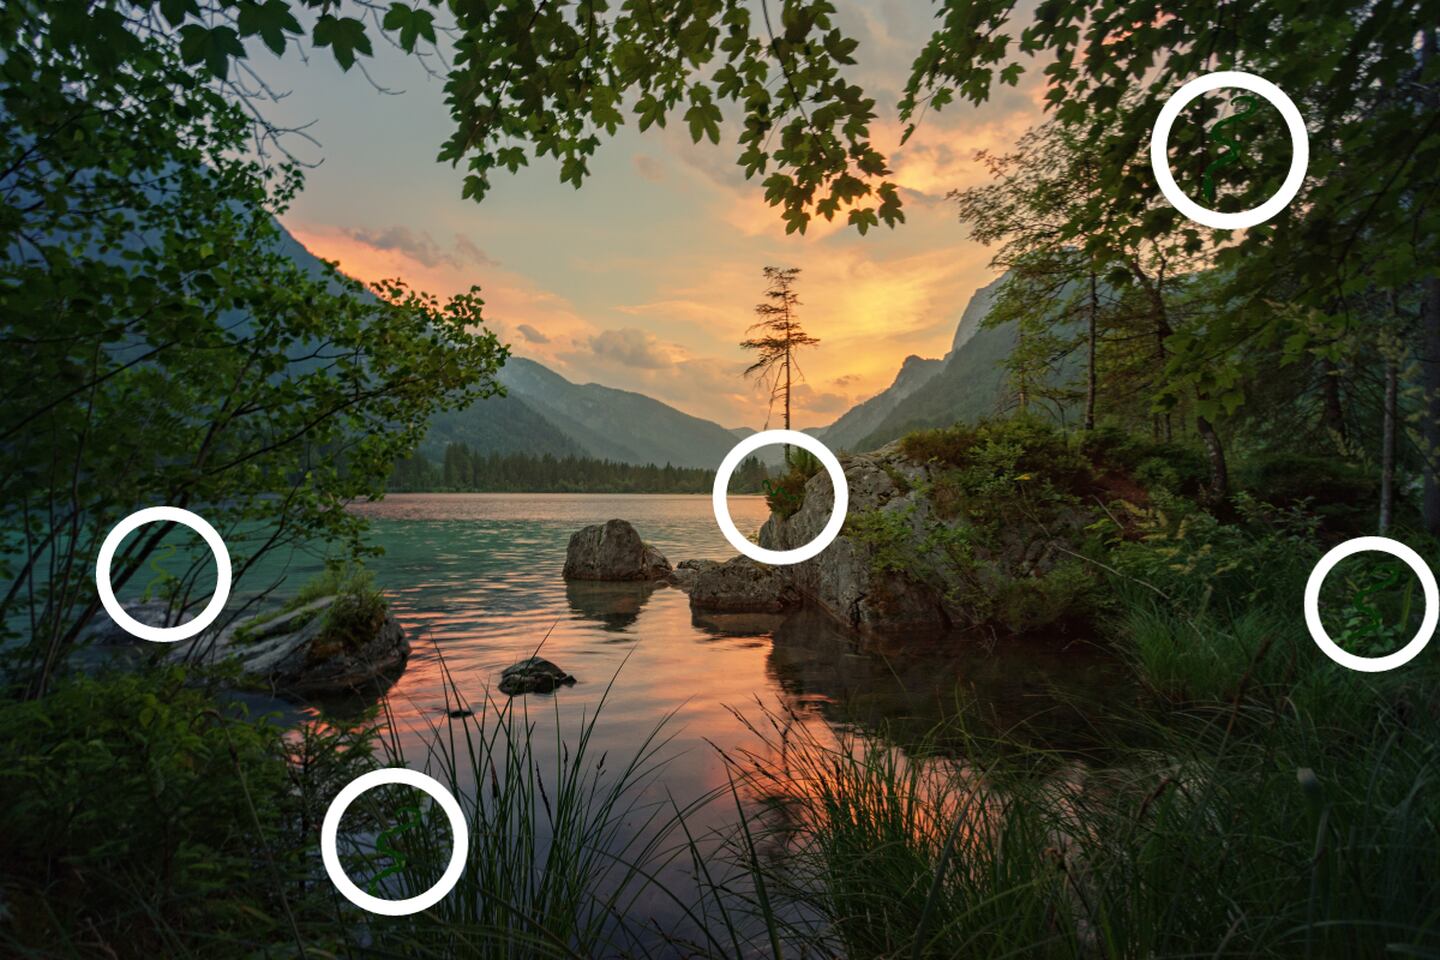 La imagen es un paisaje lleno de árboles, un lago y montañas, y entre ellas hay cinco serpientes señaladas con círculos blancos.